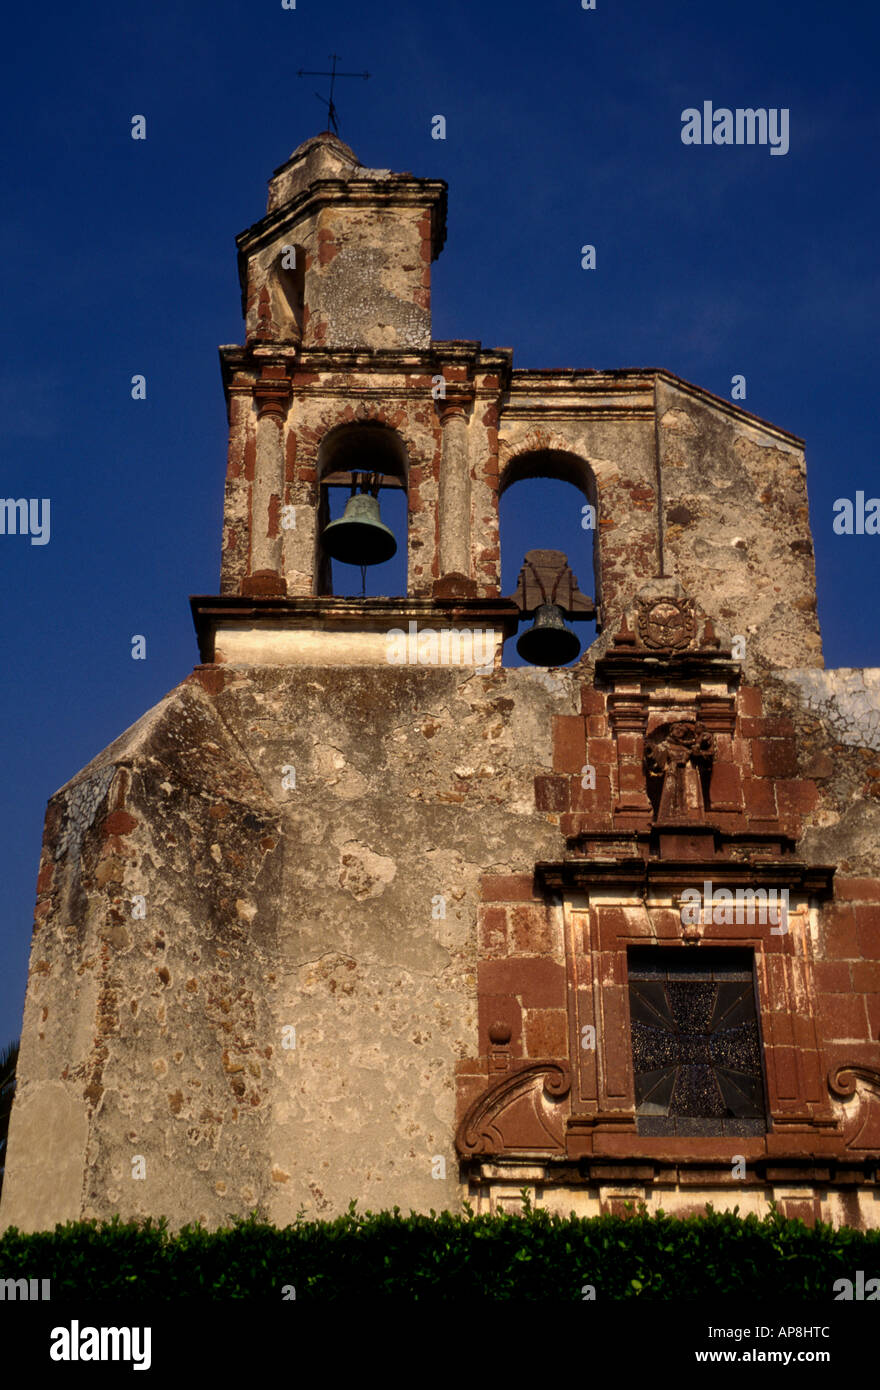 La tour du clocher, l'église de troisième ordre, el tercer orden, église catholique romaine, le catholicisme romain, ville de San Miguel de Allende, Guanajuato, Mexique Banque D'Images